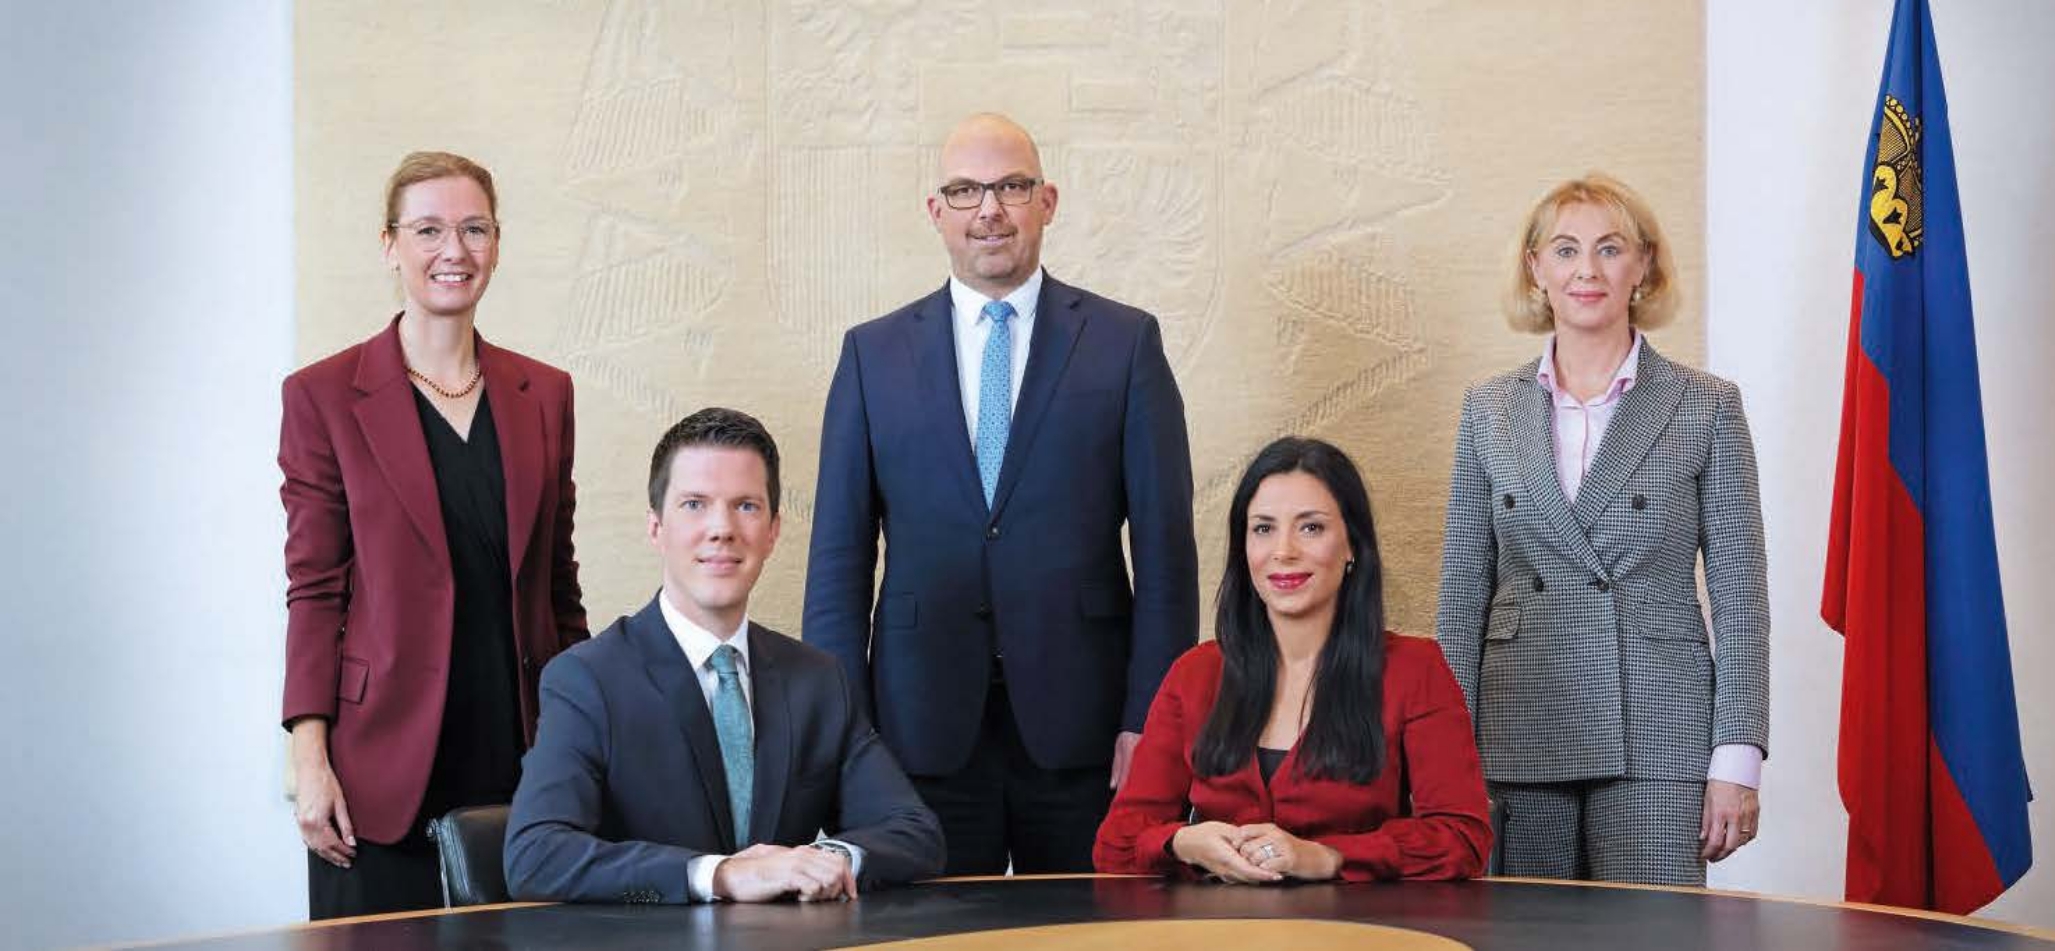 Regierungsmitglieder der Regierung des Fürstentums Liechtenstein